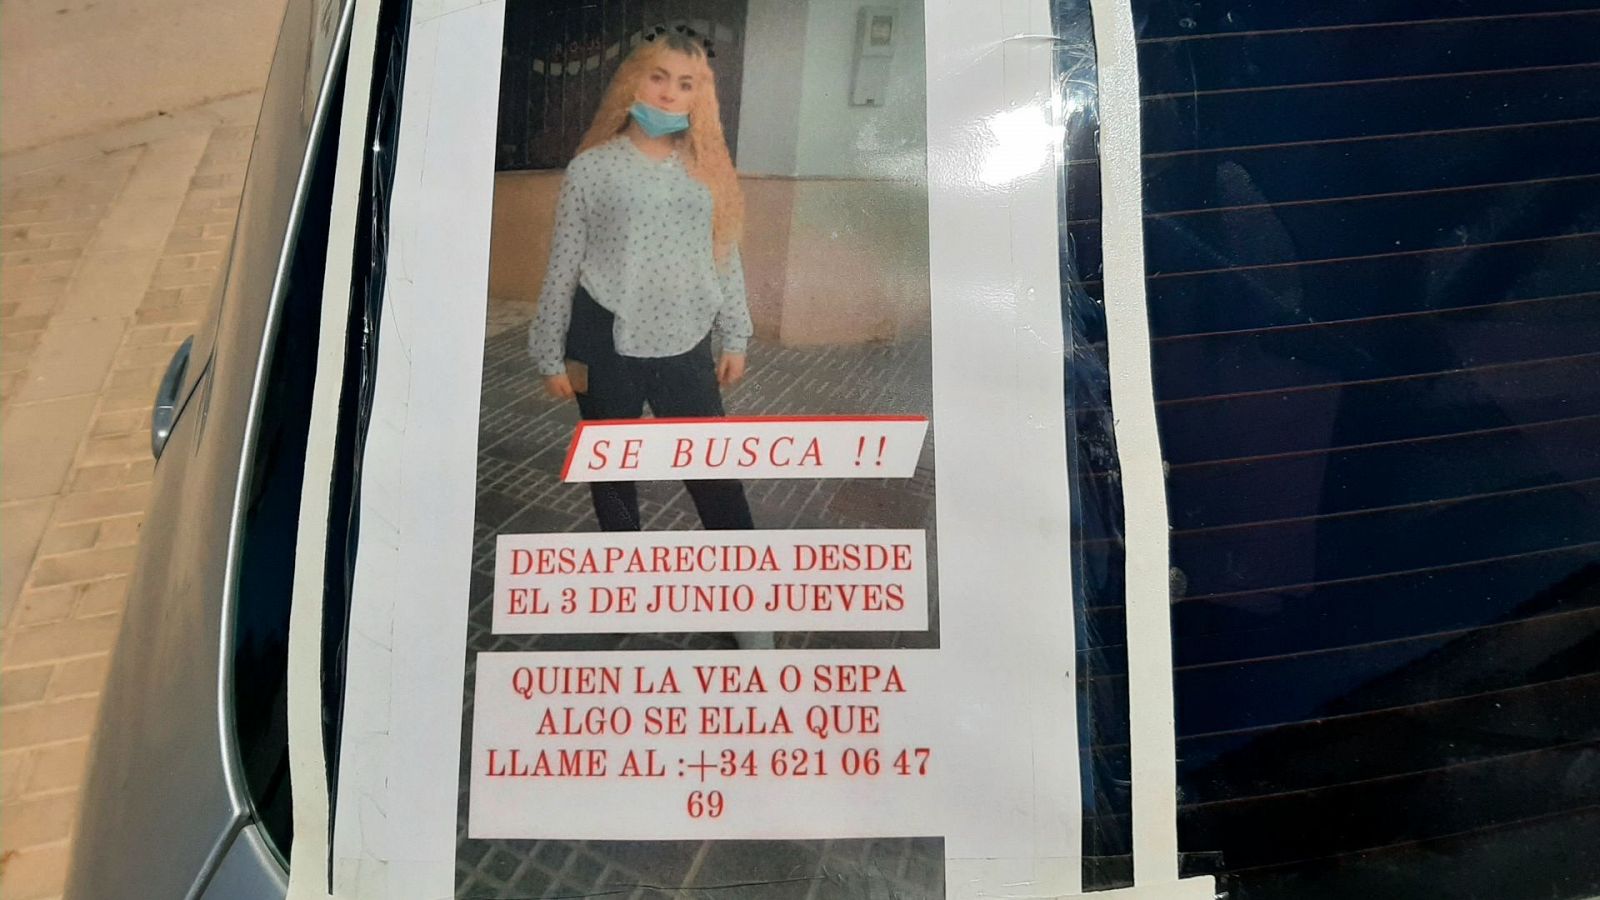 El exnovio de Rocío Caíz, la menor desaparecida en Sevilla, confiesa el crimen